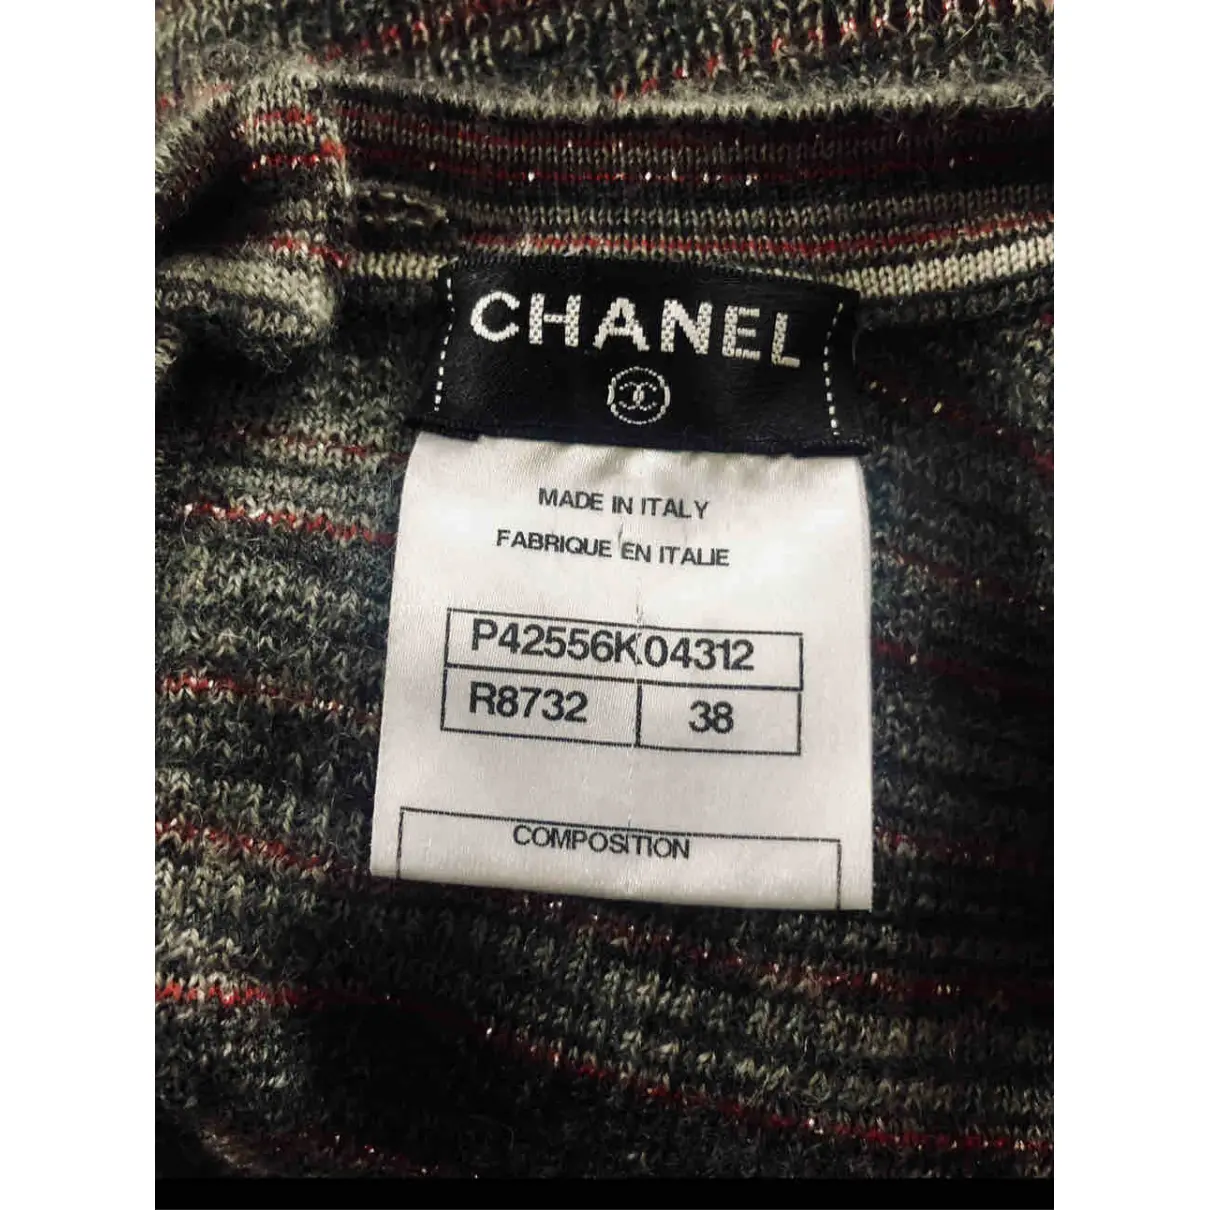 Buy Chanel Cashmere jumper online